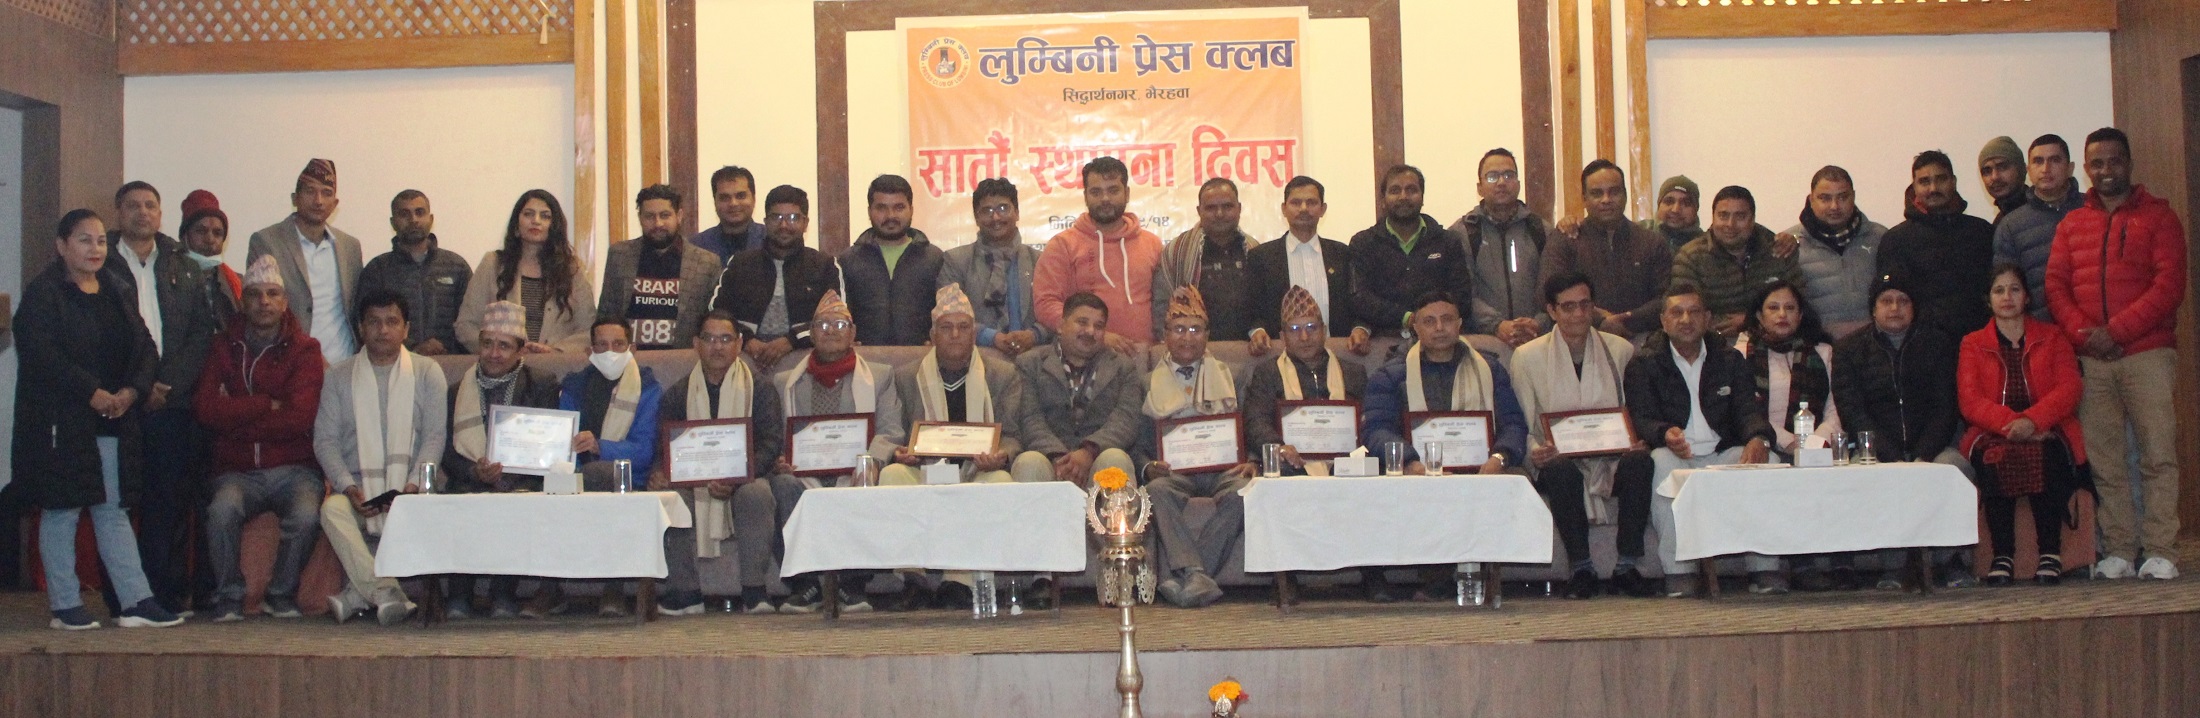 लुम्बिनी प्रेस क्लबद्वारा पन्त र ढुंगानासहित १५ पत्रकारलाई सम्मान